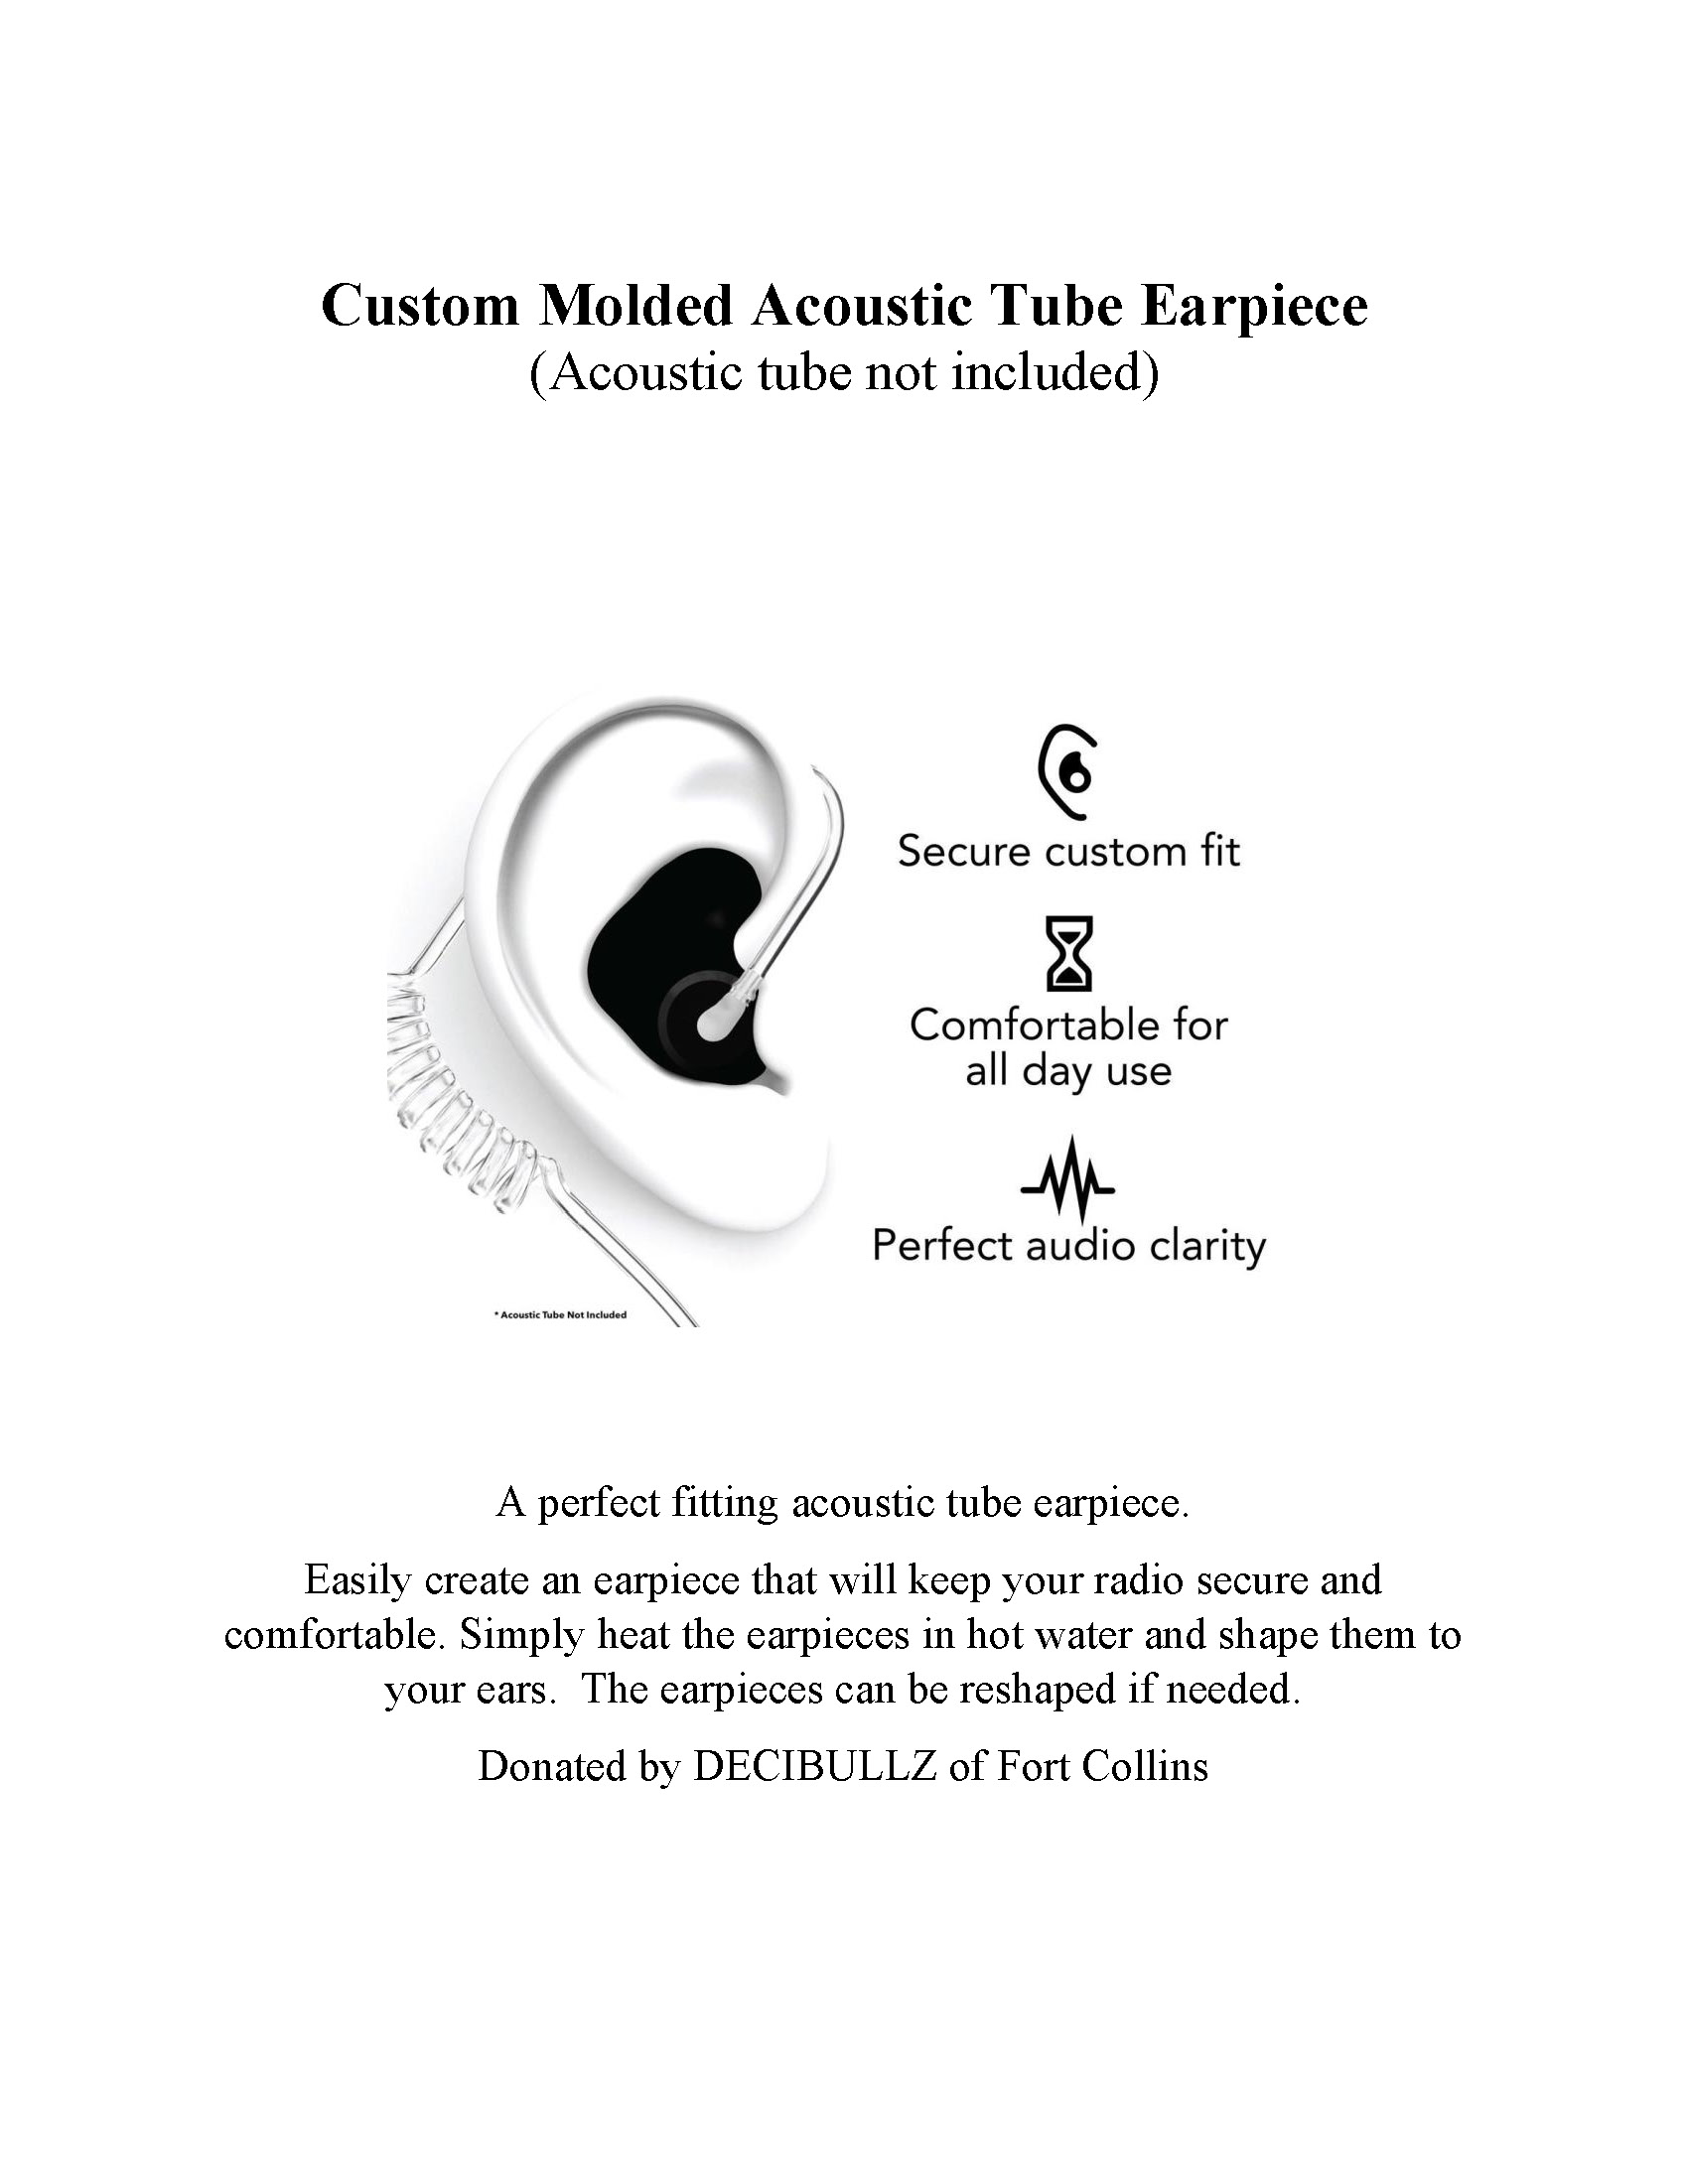 44-Acoustic-Tube-Earpiece-5dc43d98318c5